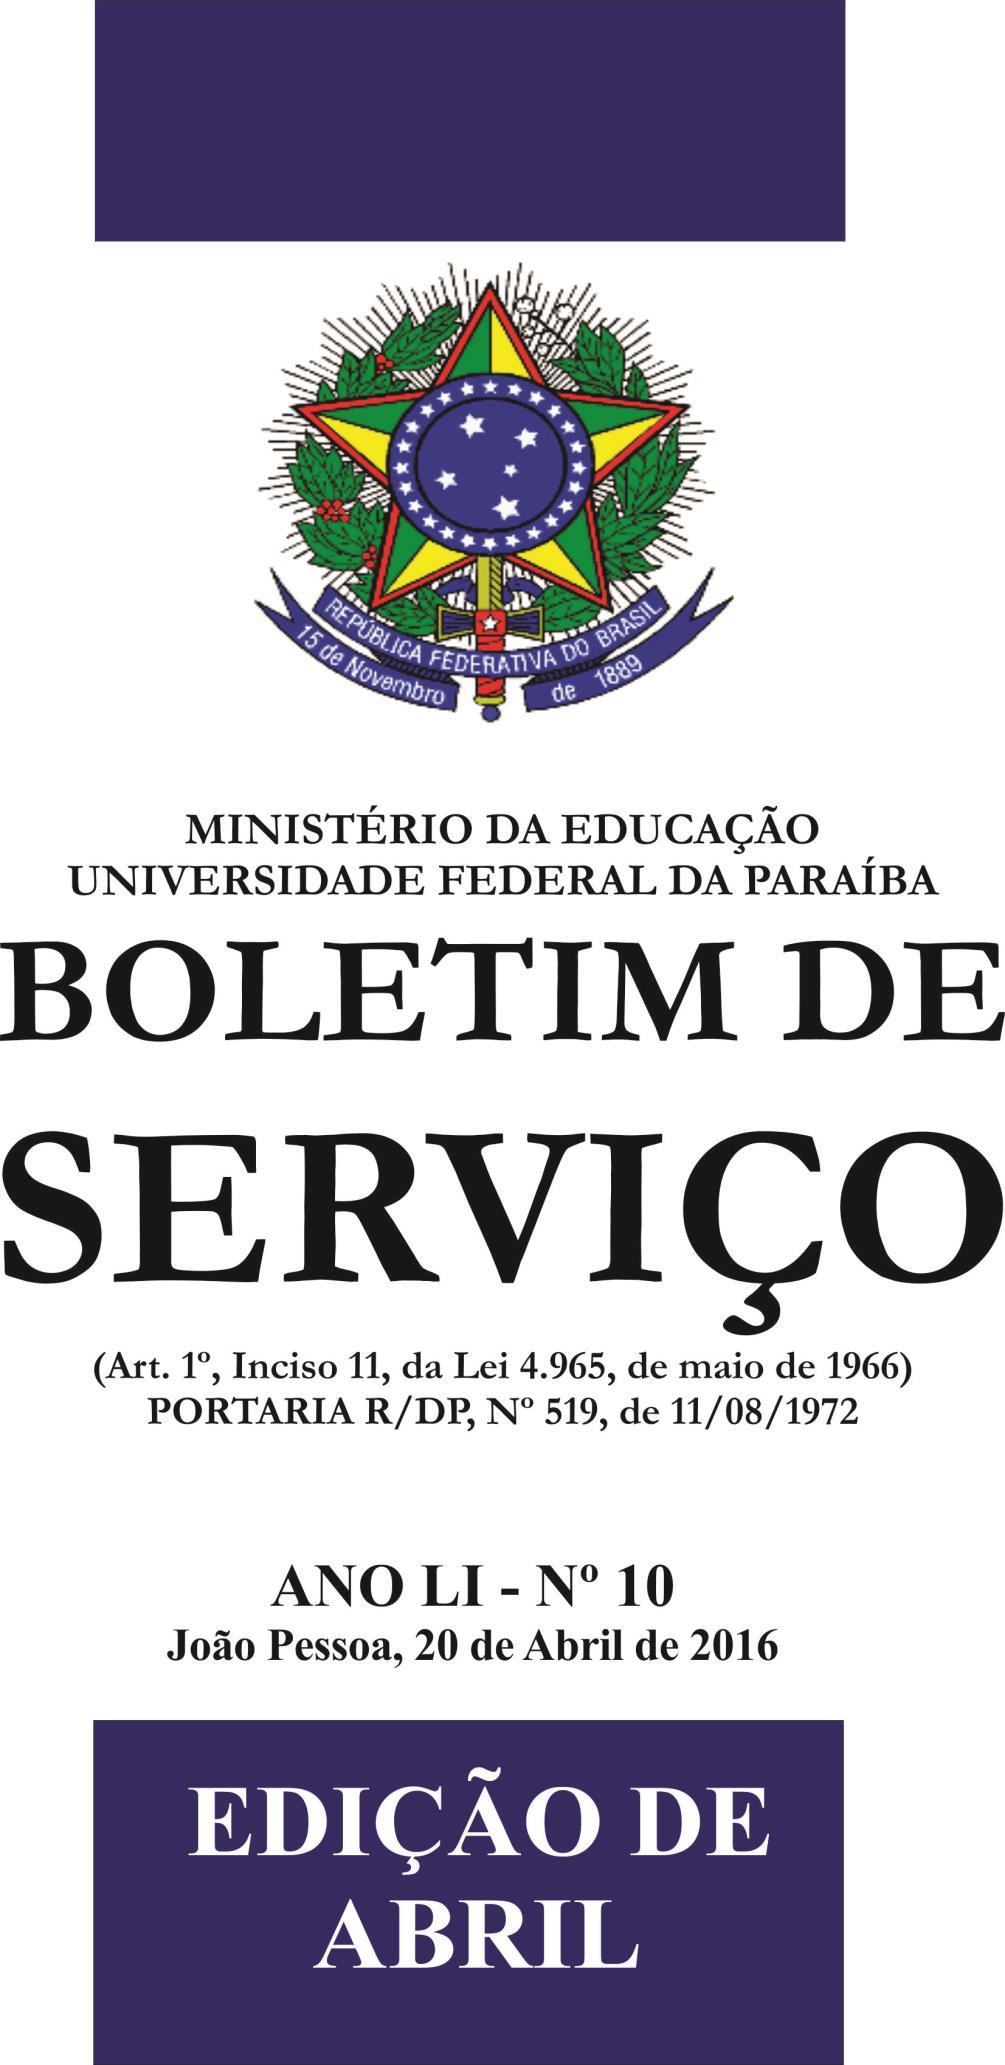 01/10/2018 BOLETIM DE SERVIÇO - Nº 42 PÁGINA 1 ANO LIII